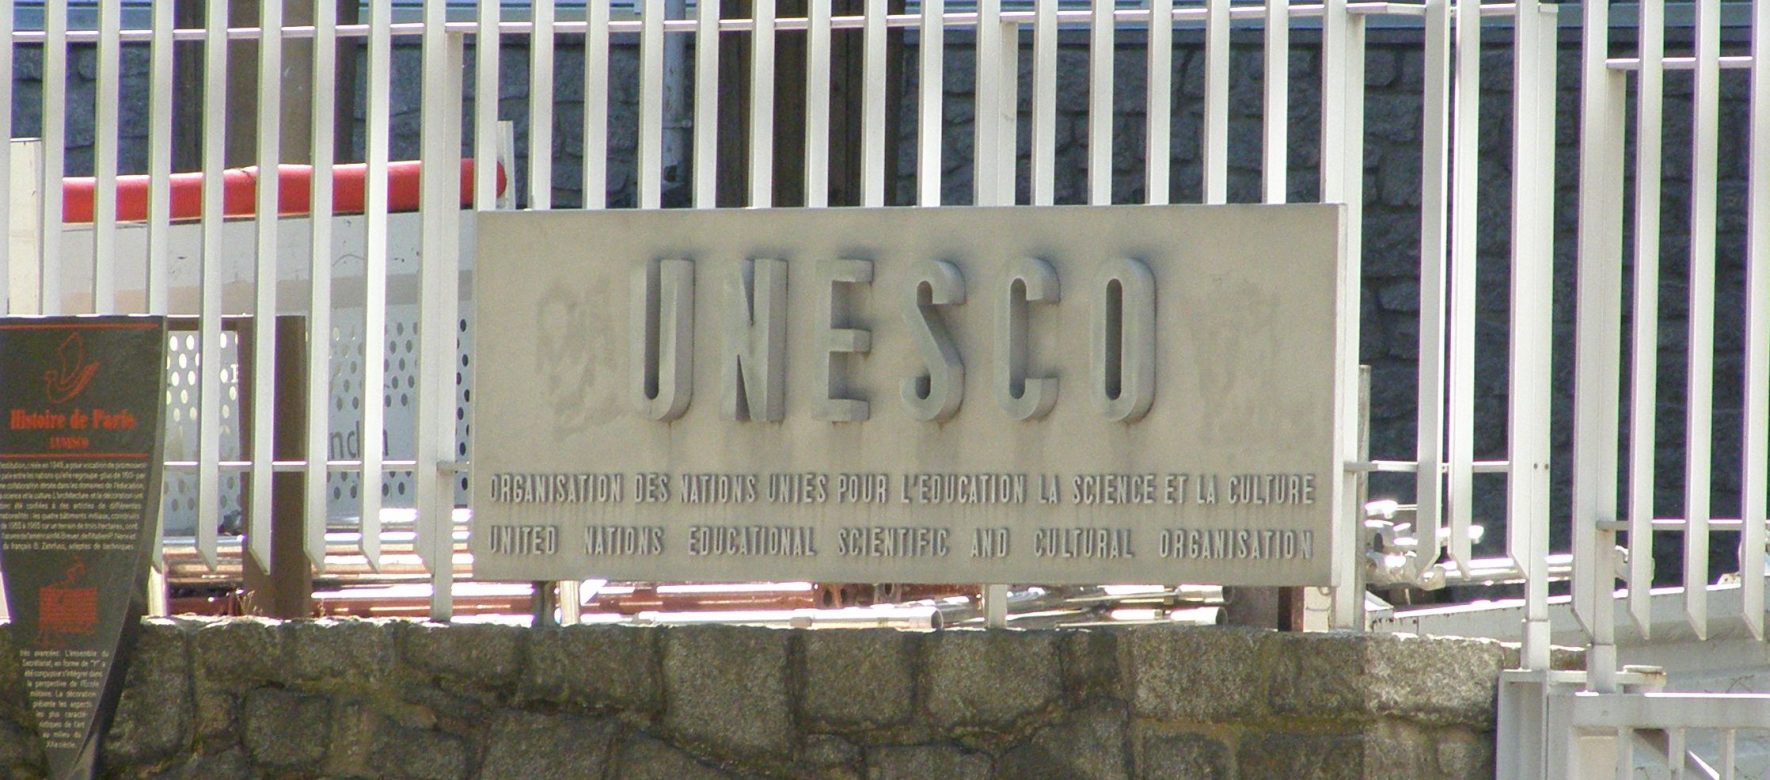 Bientôt un nouveau Directeur général de l’UNESCO